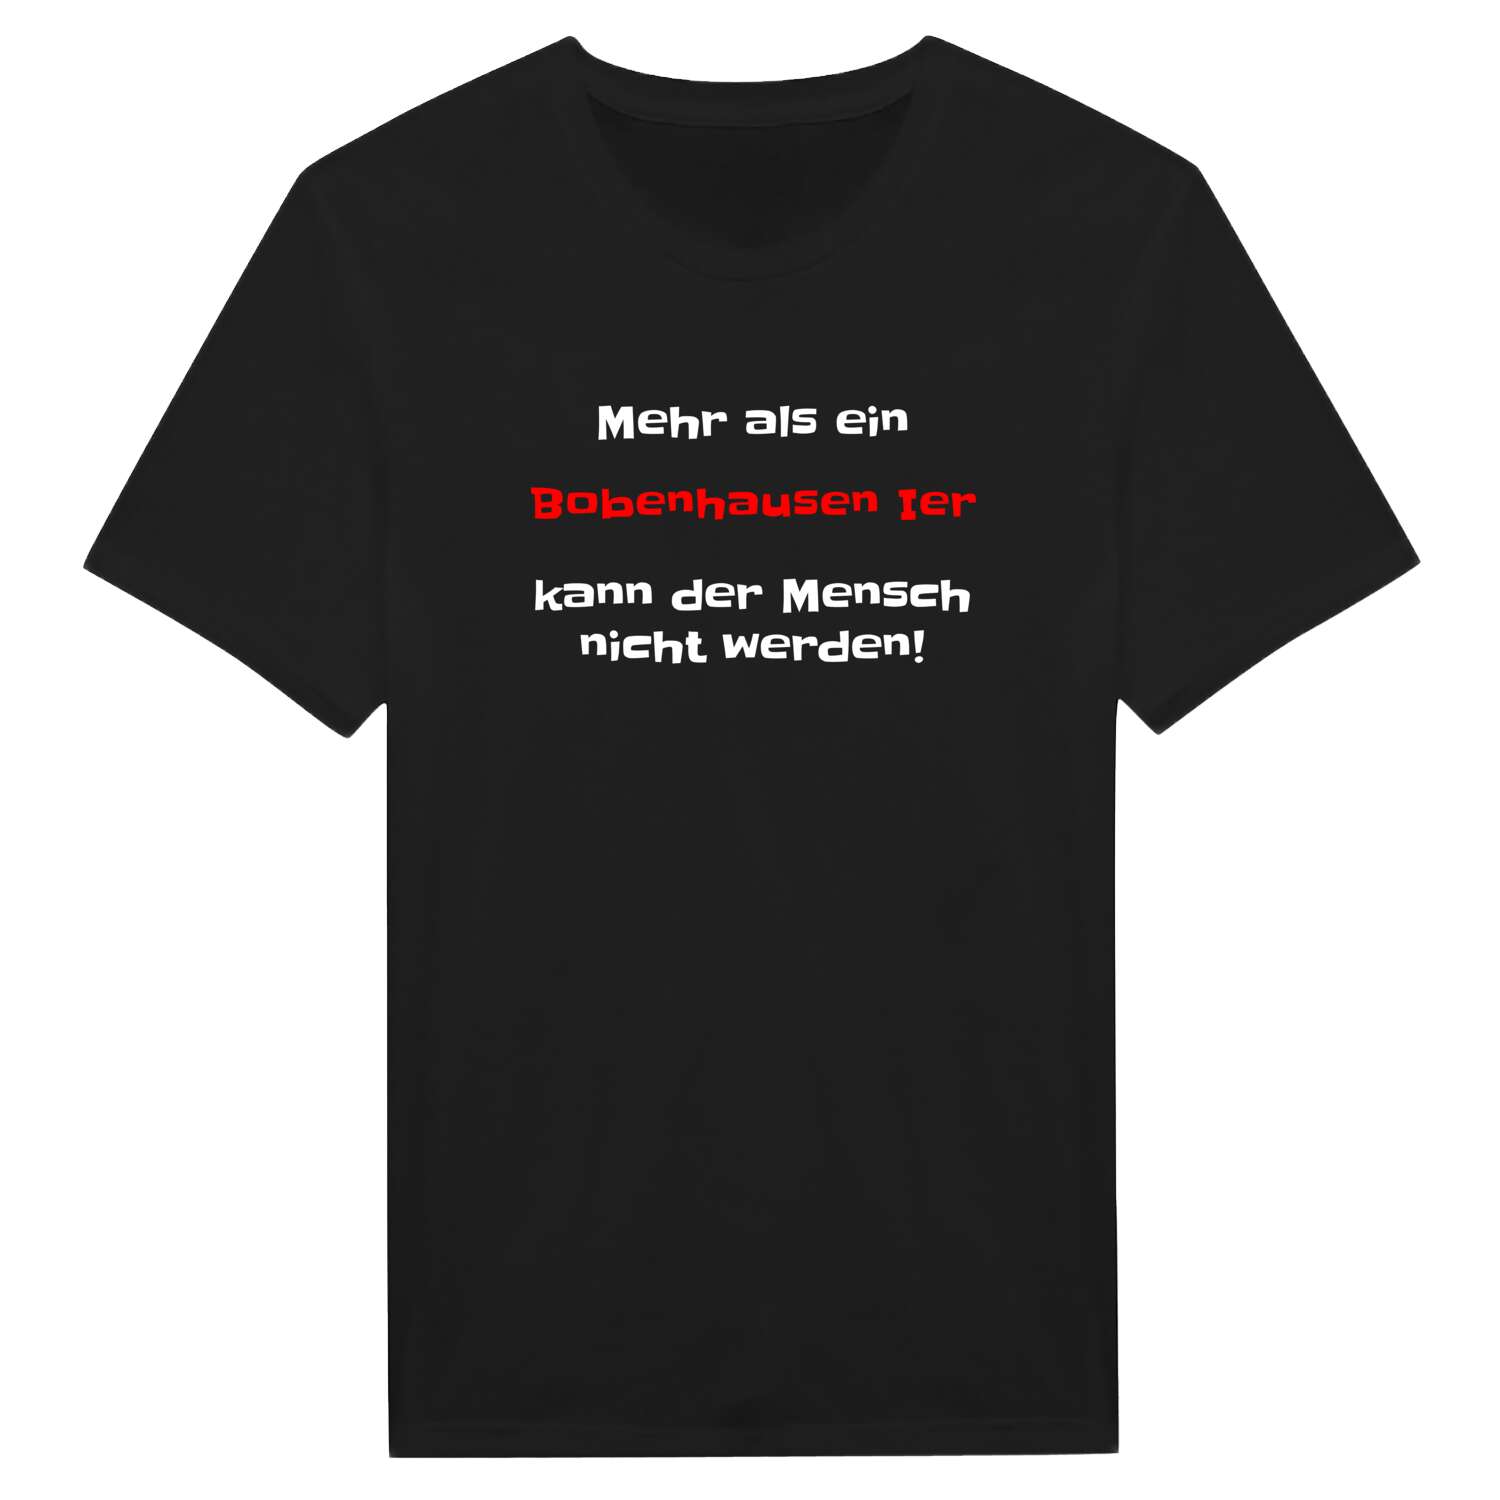 Bobenhausen I T-Shirt »Mehr als ein«